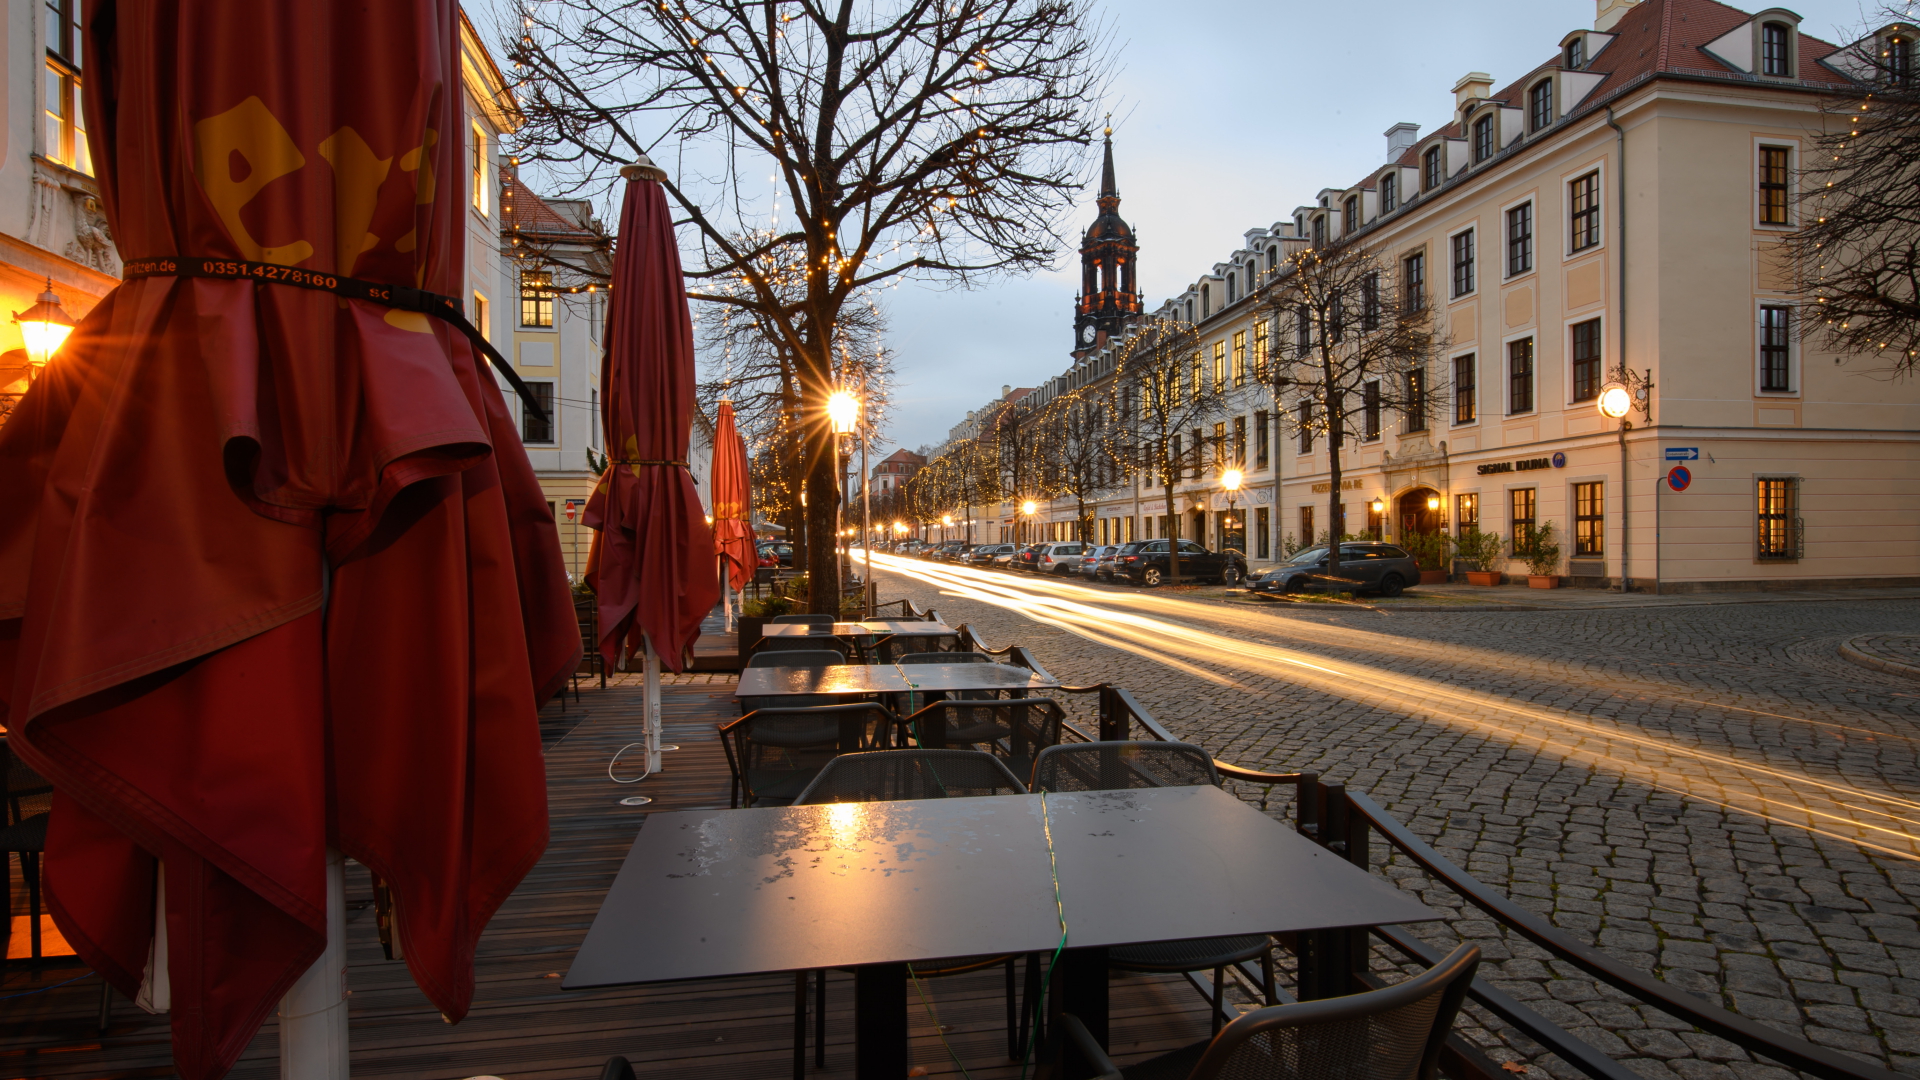 Leere Tische und geschlossene Schirme stehen vor einem Restaurant in Dresden, während auf der Königstraße die Scheinwerfer vorbeifahrender Autos Lichtspuren ziehen. | dpa